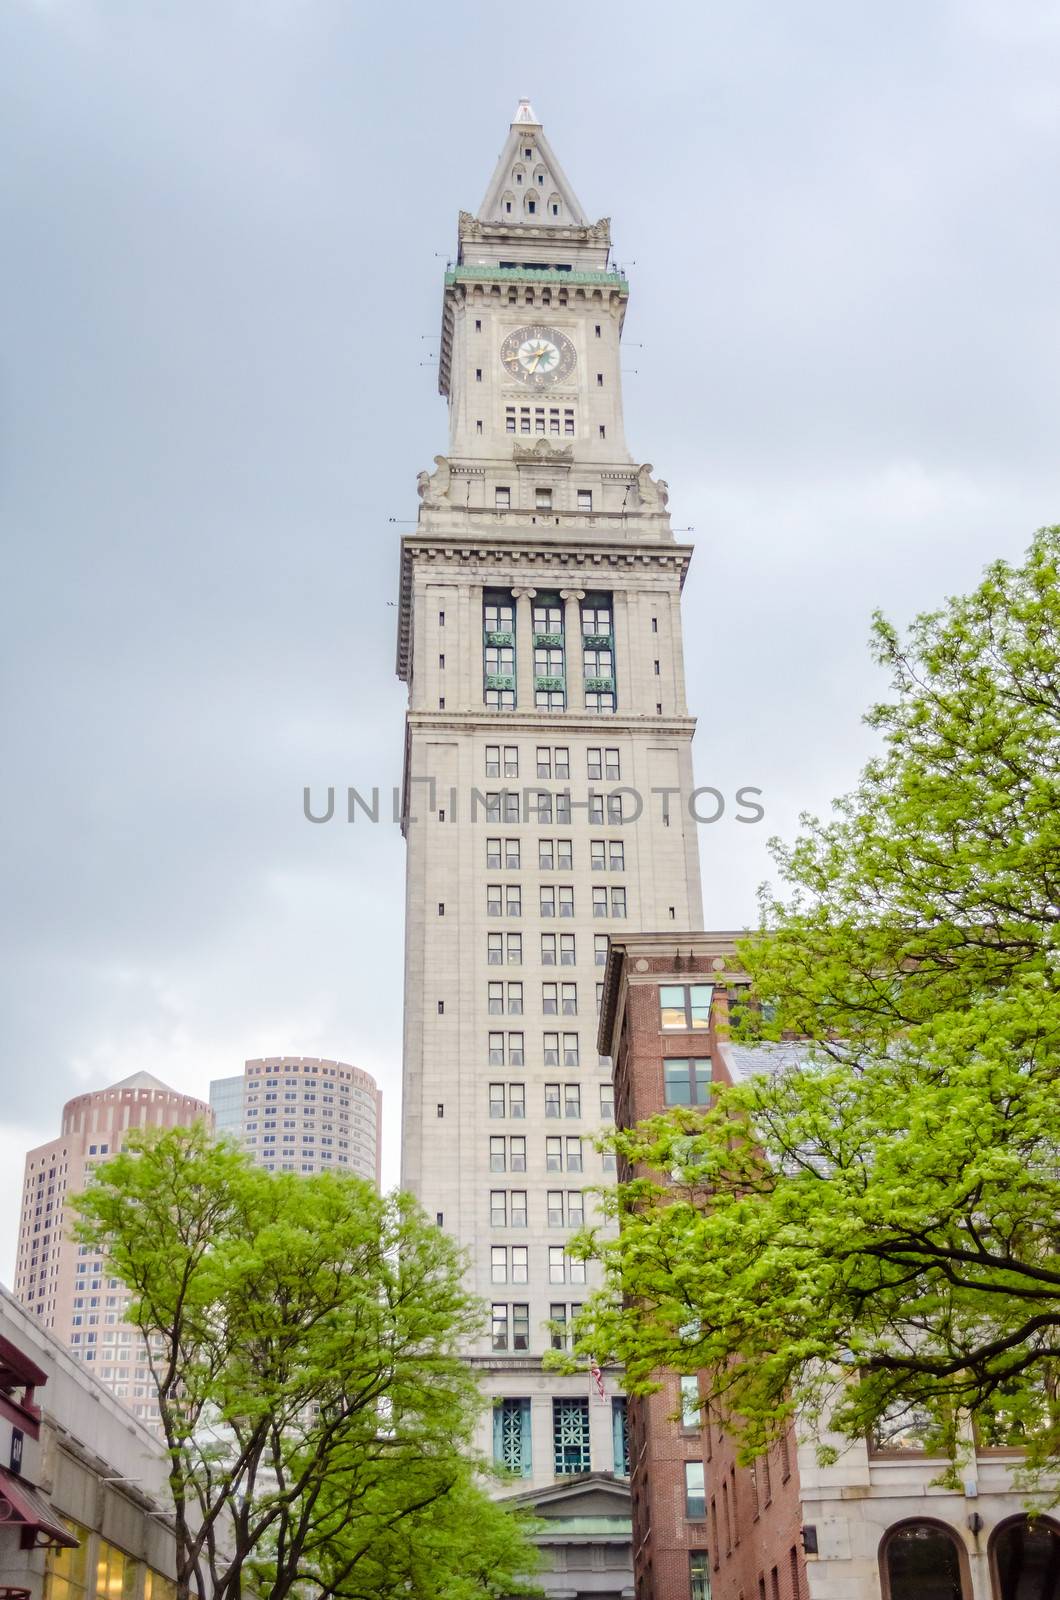 Custom House Tower, Boston by marcorubino